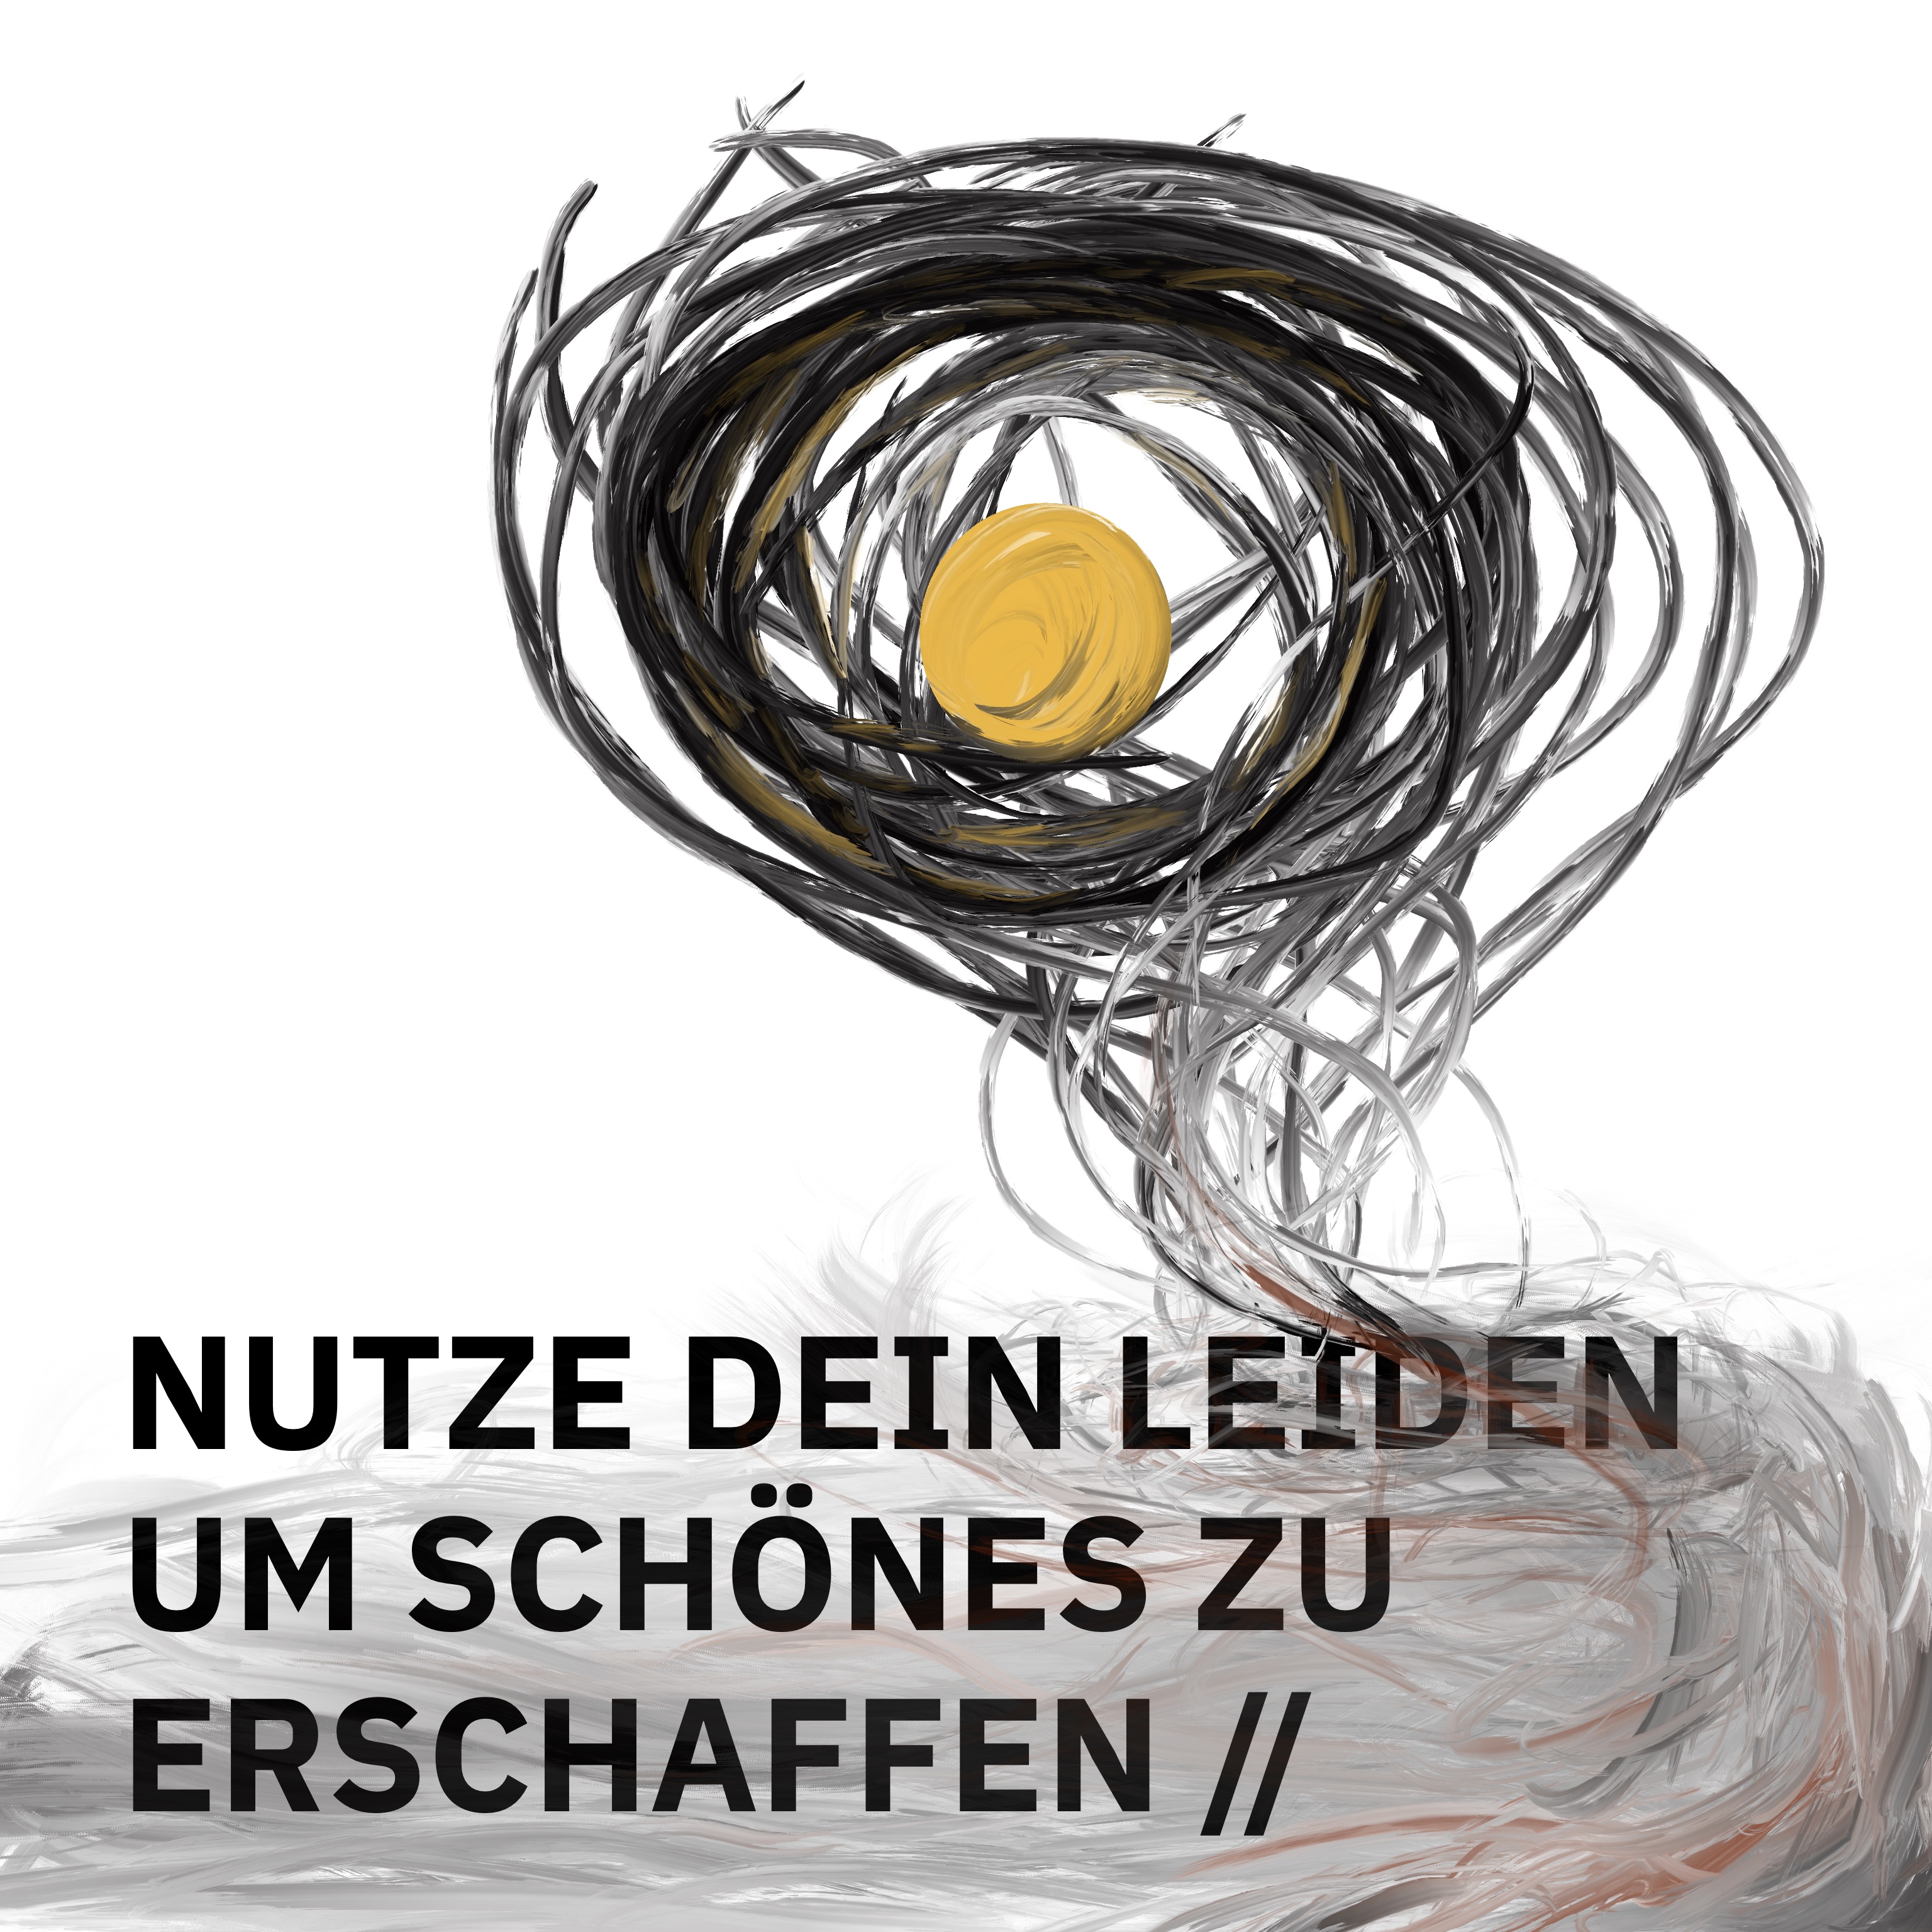 ÜBERSCHRIFTEN Remixes № 6: NUTZE DEIN LEIDEN, UM SCHÖNES ZU ERSCHAFFEN //